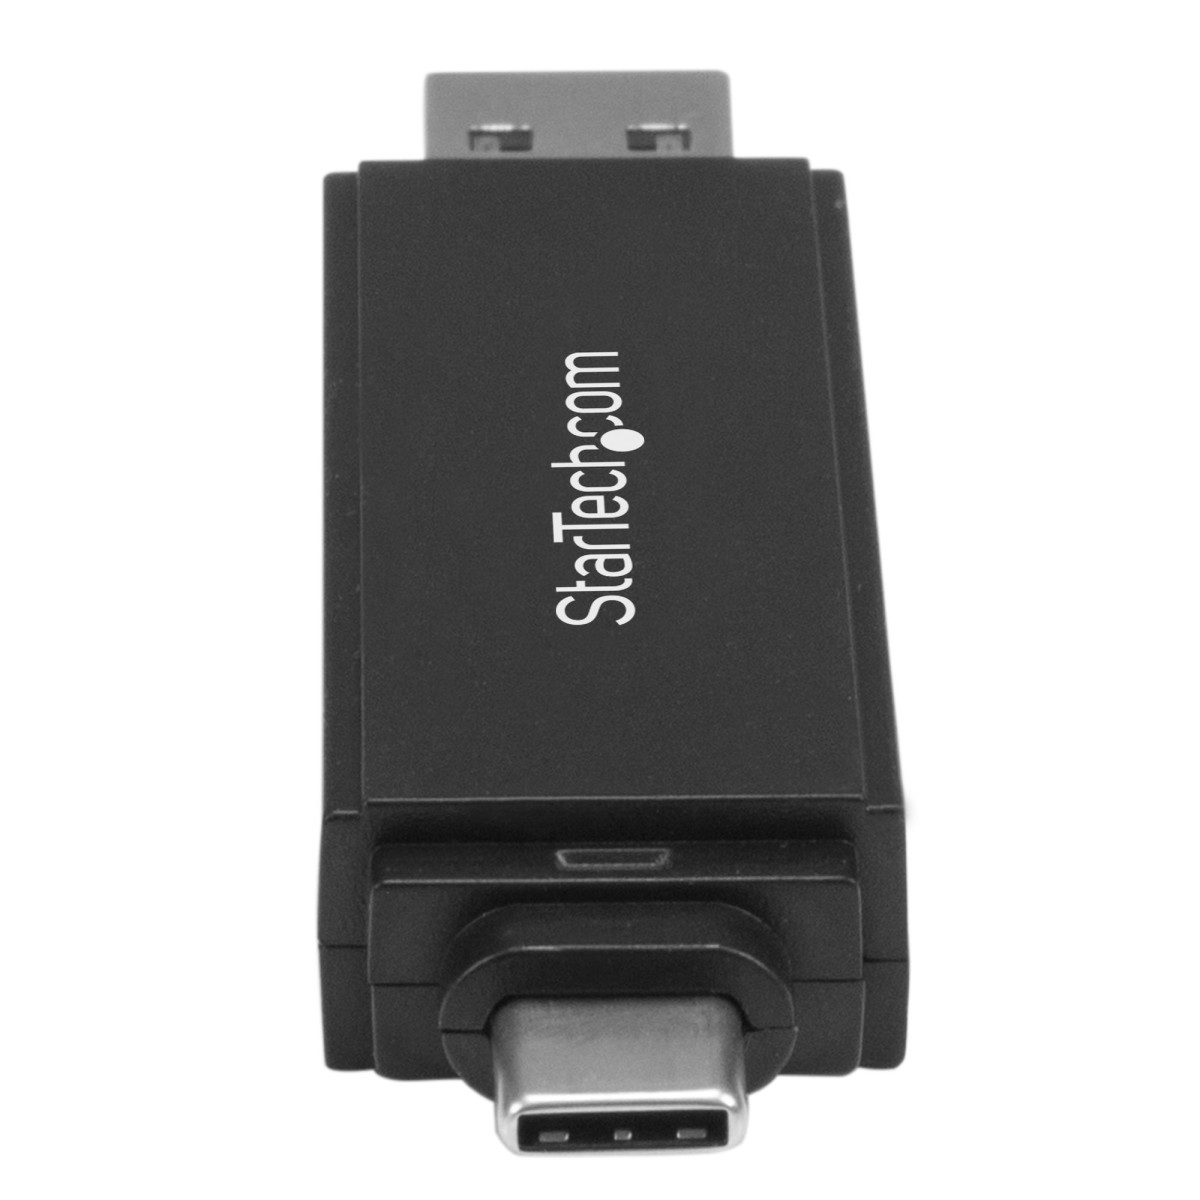 USB 3.0 SD and microSD Card Reader